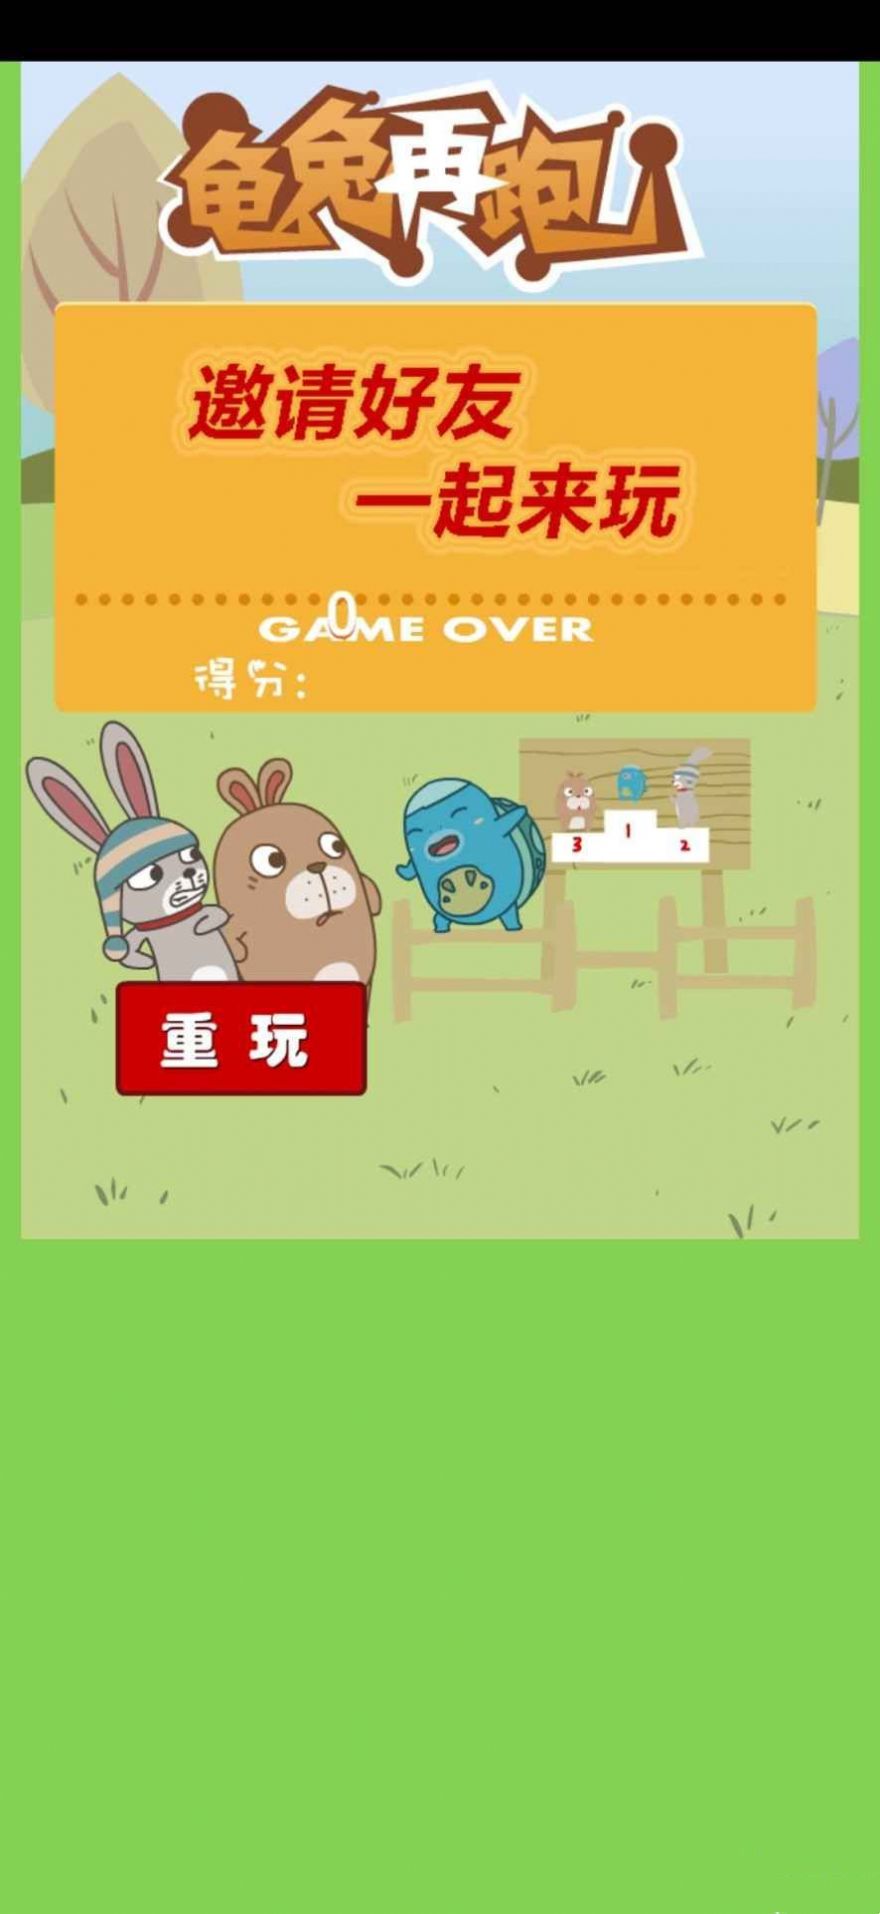 龟兔再跑手游安卓版下载-龟兔再跑多人联机趣味竞赛手游下载v1.0